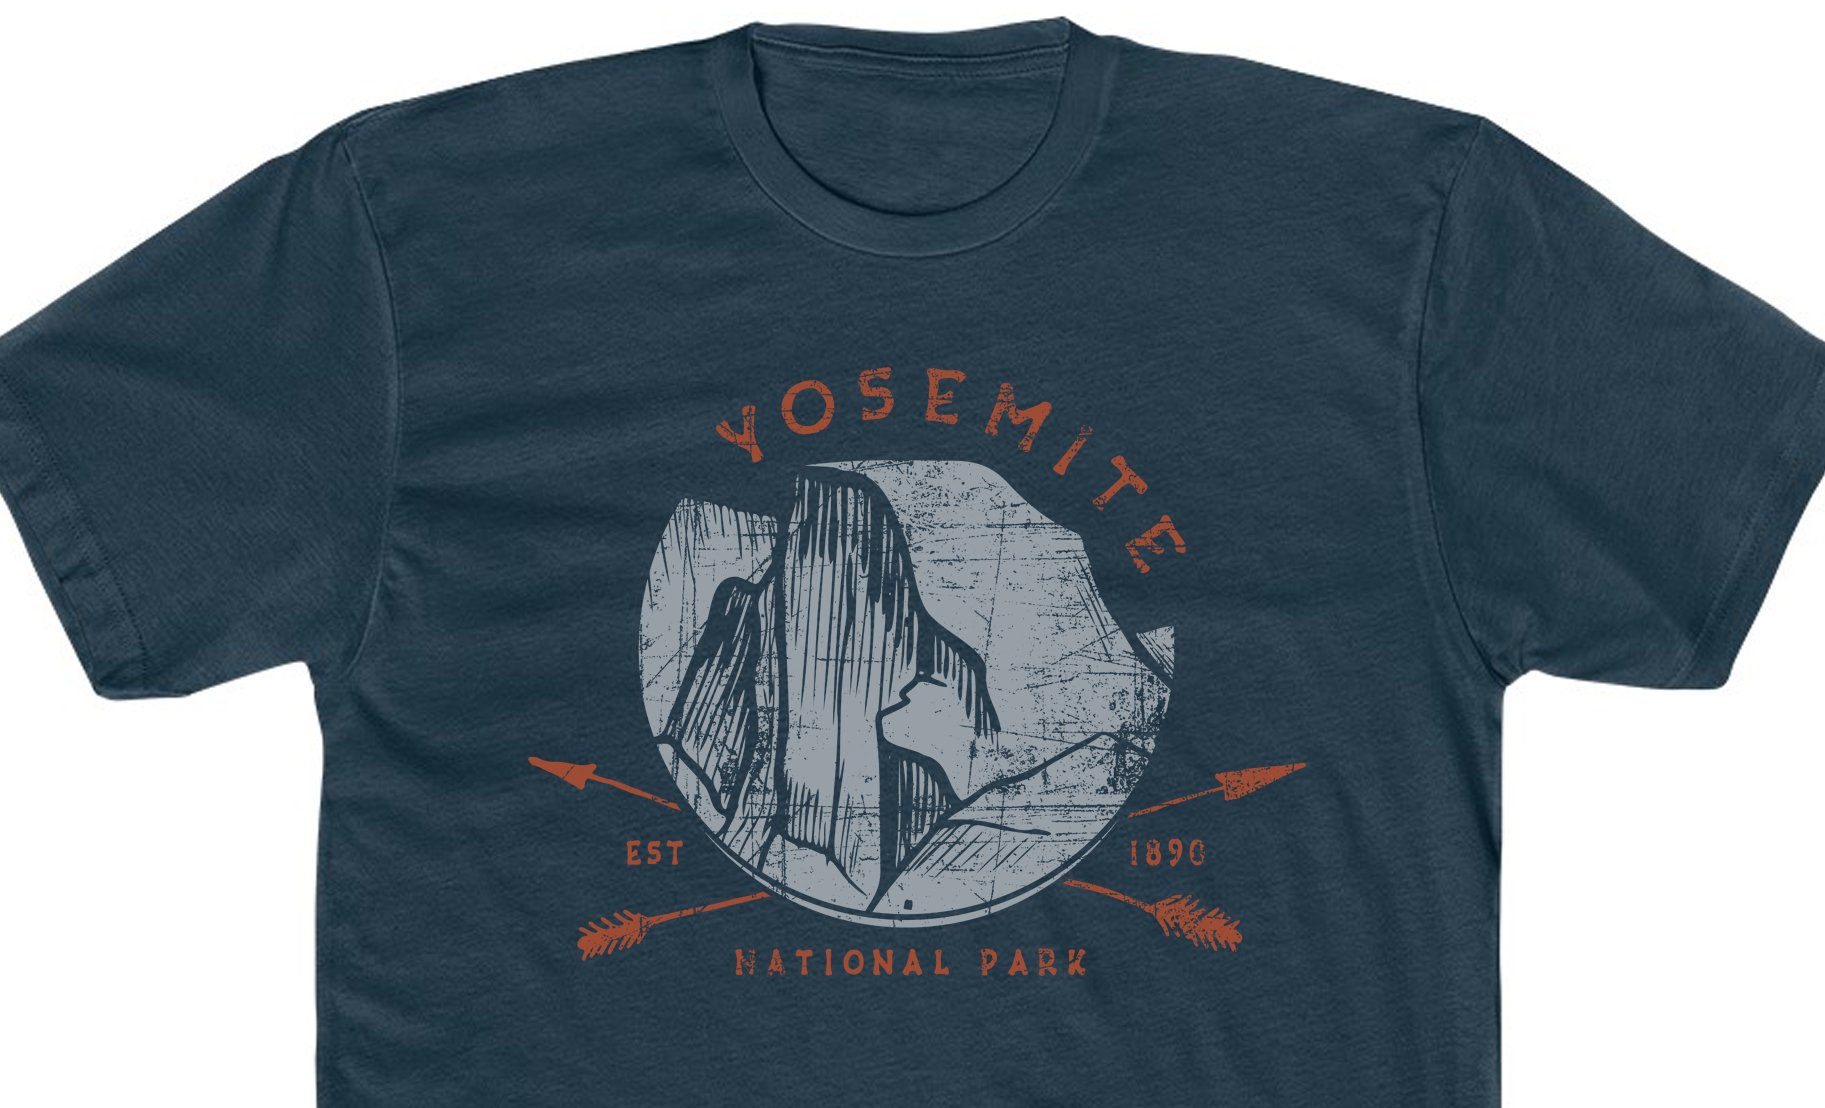 02-YosemiteNationalPark-Shirt-navy.jpg